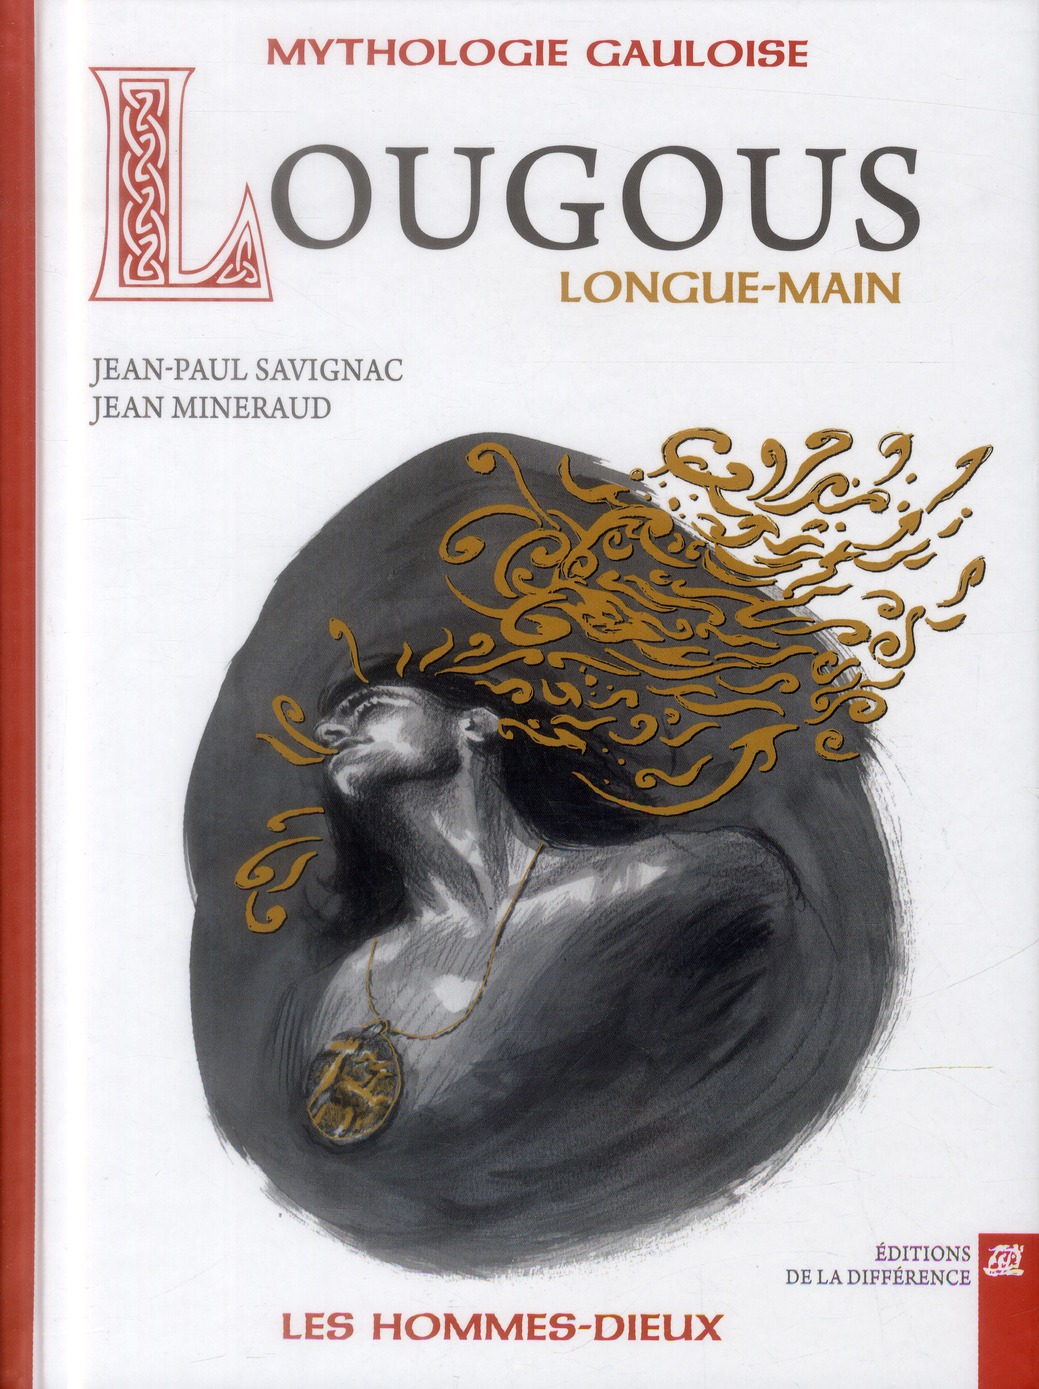 LOUGOUS, LONGUE-MAIN - MYTHOLOGIE GAULOISE